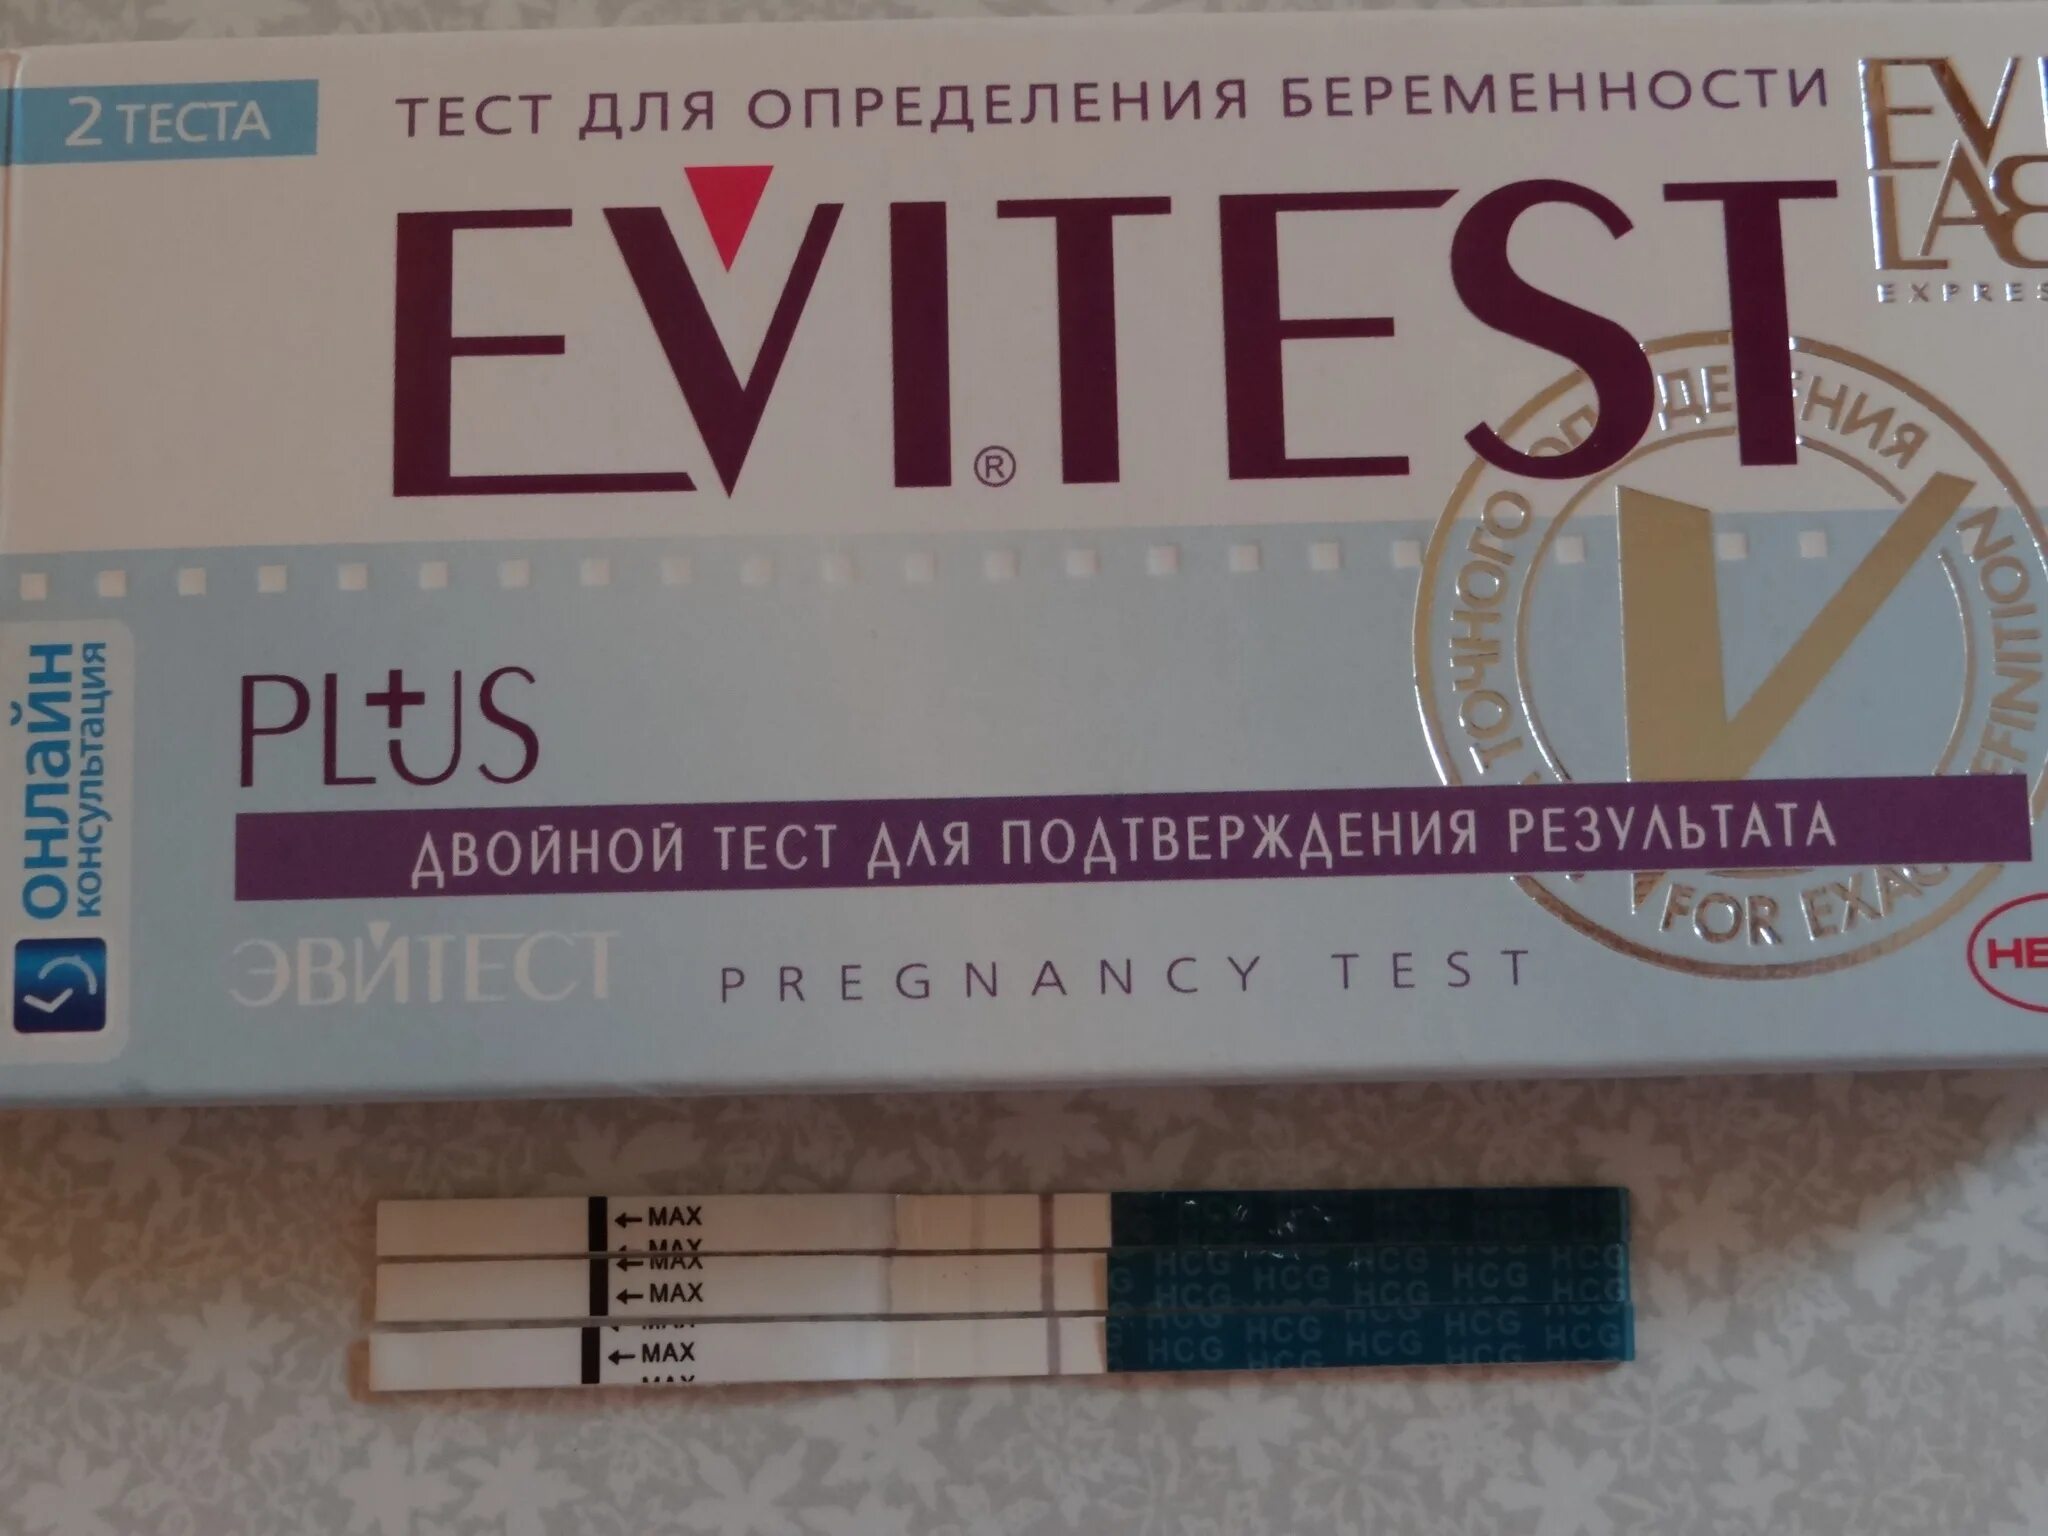 Тесты на ранних сроках отзывы. Тест для определения беременности на ранних сроках до задержки. Самый точный тест на беременность. Самый хороший тест на беременность. Самый качественный тест на беременность.